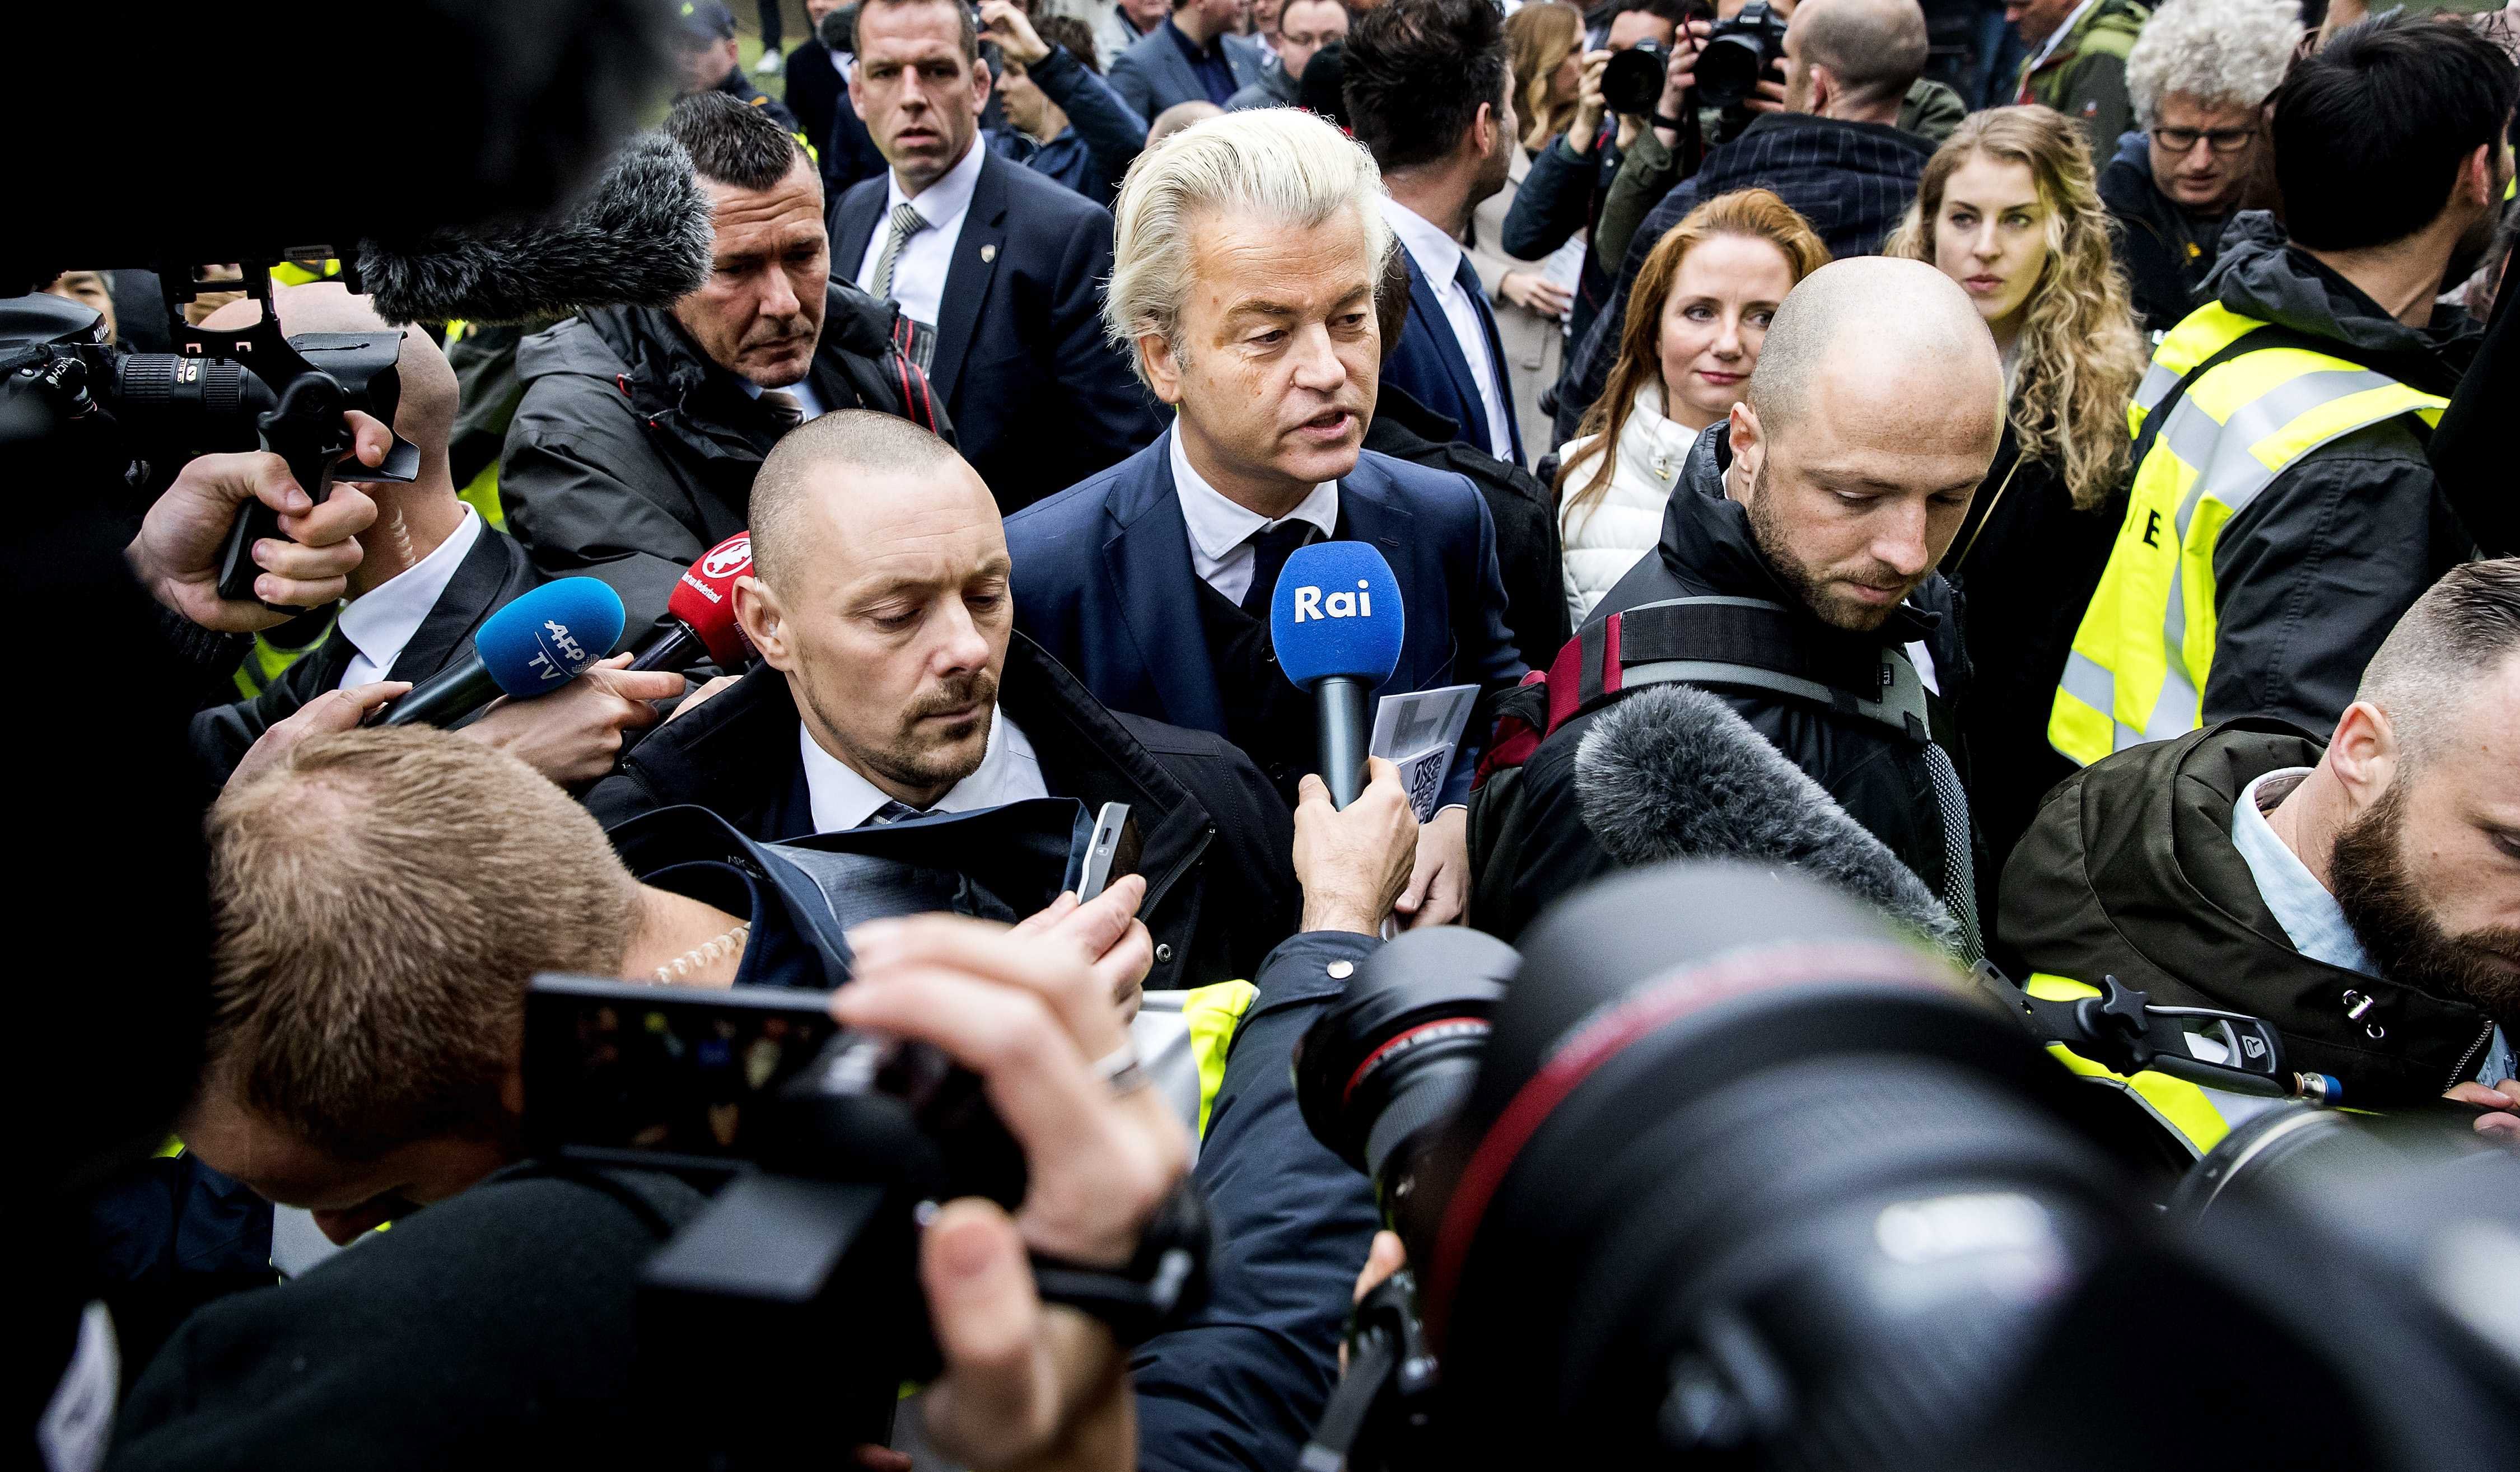 El ultraderechista Wilders, favorito a las elecciones en los Países Bajos